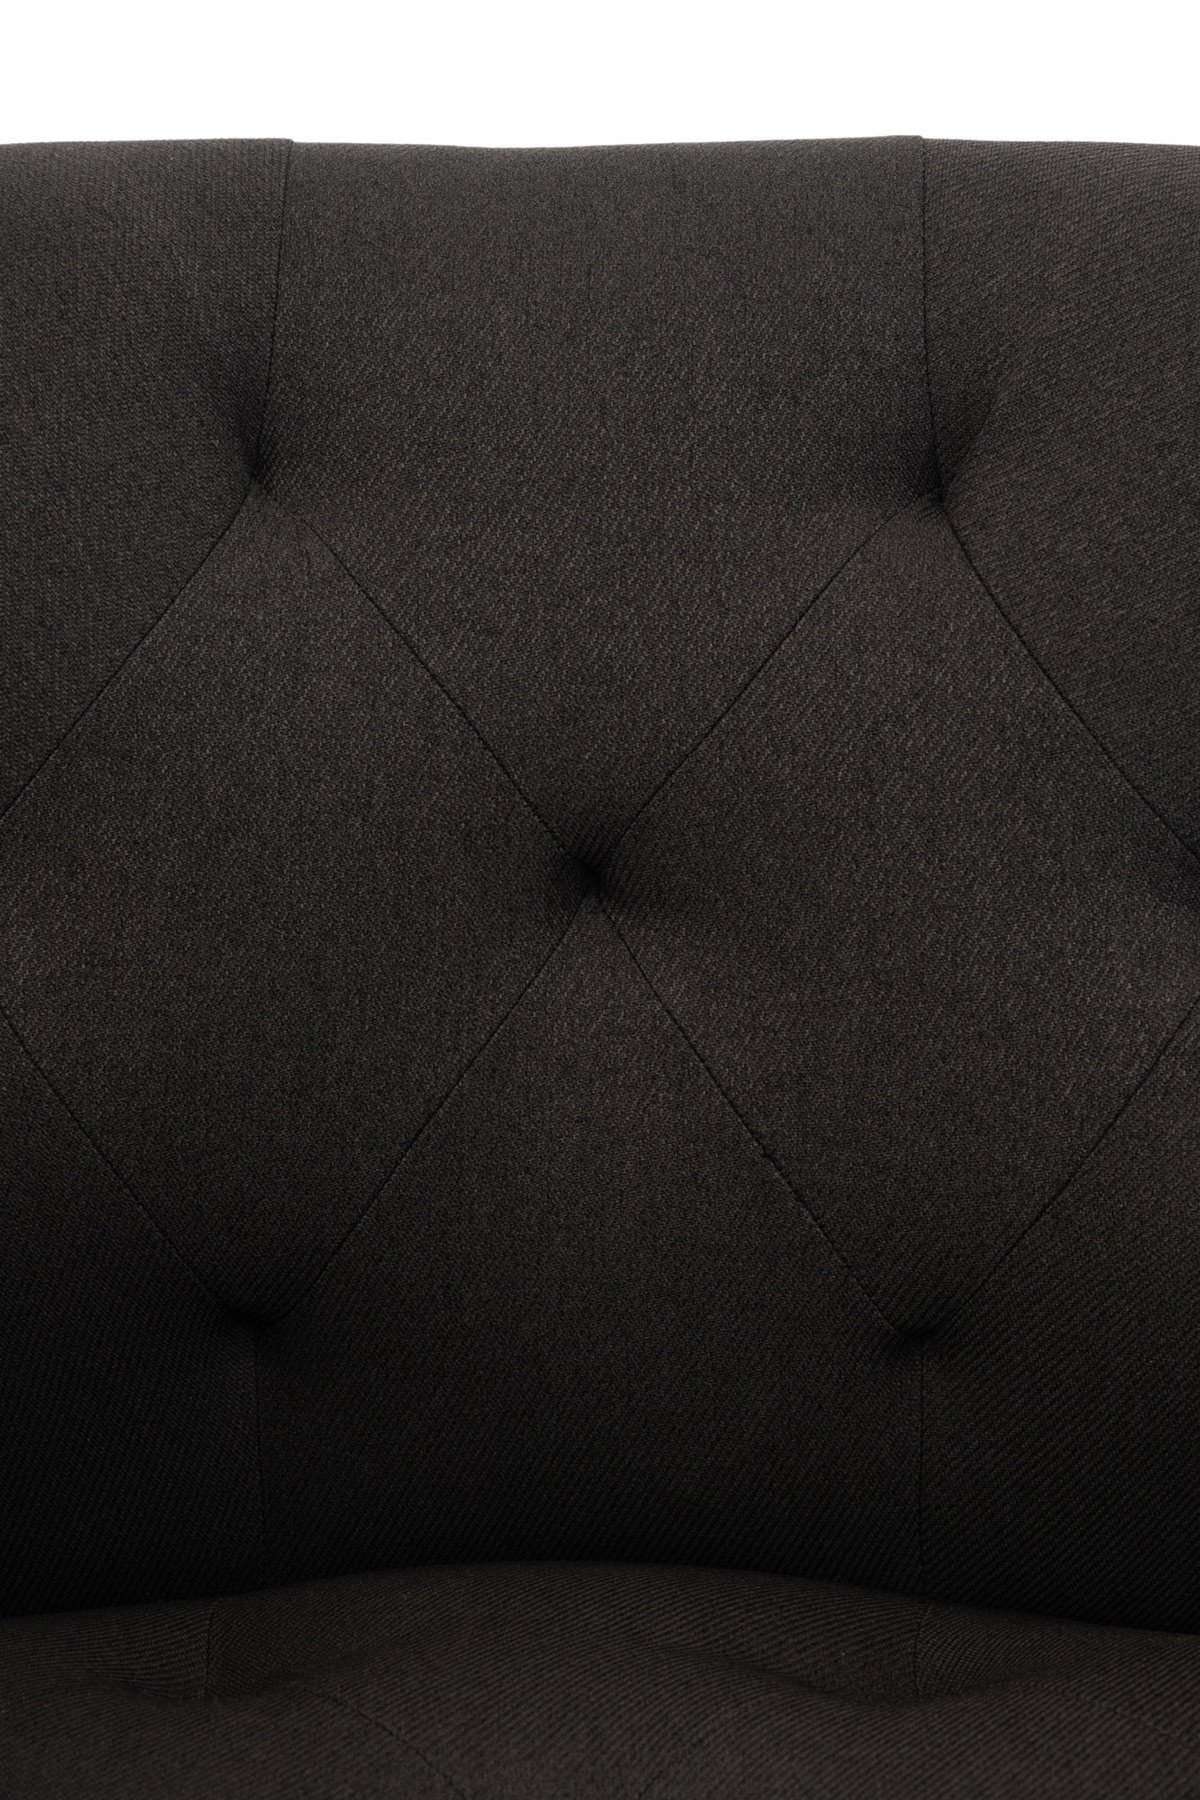 (Küchenstuhl Sitzfläche: Wohnzimmerstuhl), TPFLiving schwarz - gepolsterter Metall - - Esstischstuhl Konferenzstuhl Gestell: Sitzfläche hochwertig schwarz Esszimmerstuhl - mit Stoff Lamfol